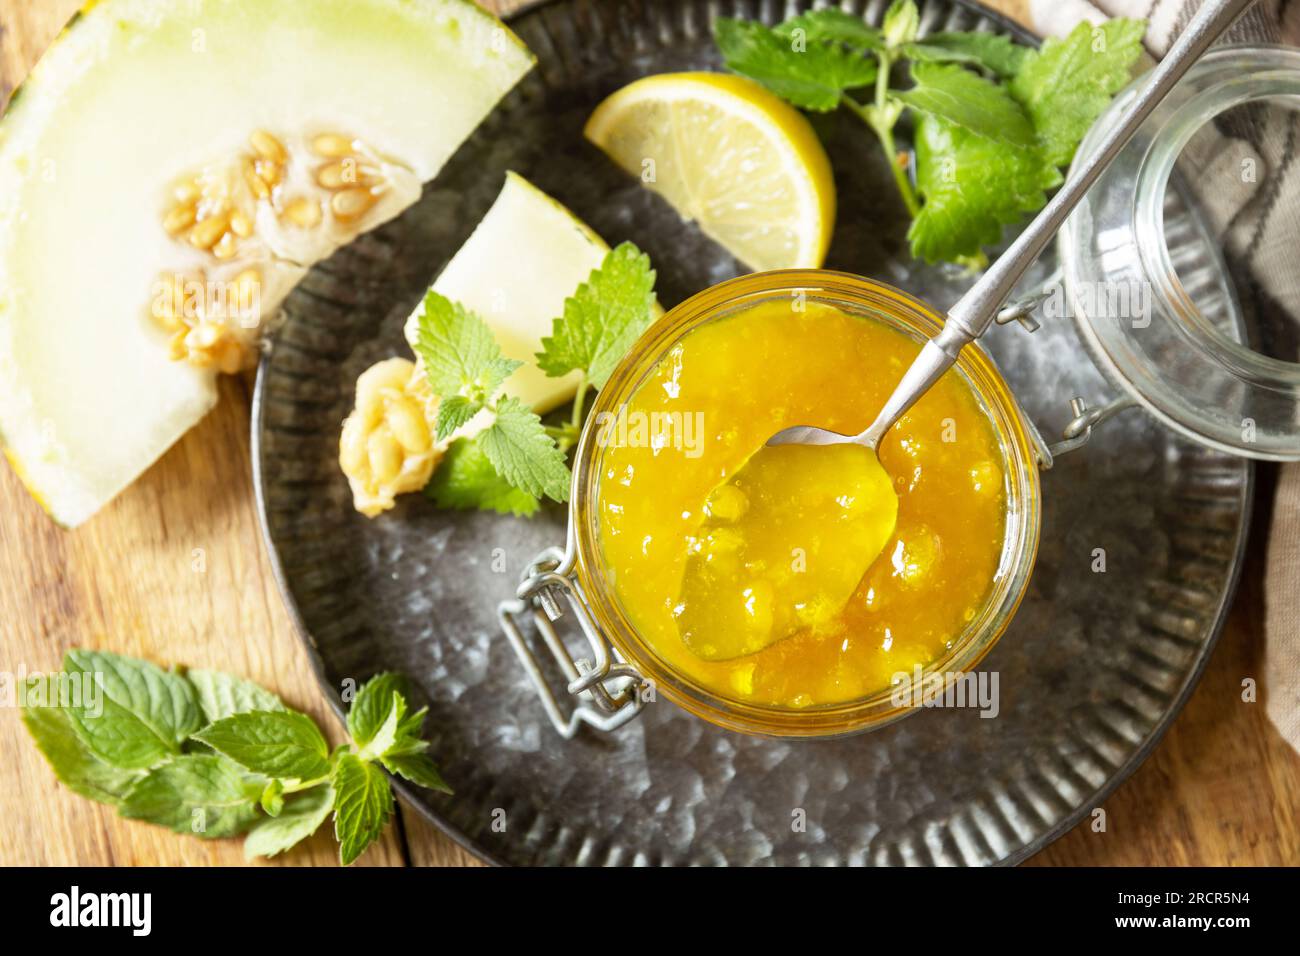 Hausgemachtes Preserve. Süße Melone und Zitrusmarmelade oder Gelee in einem kleinen Glasgefäß mit frischen Melonenscheiben auf einem rustikalen Holztisch. Blick von oben. Stockfoto